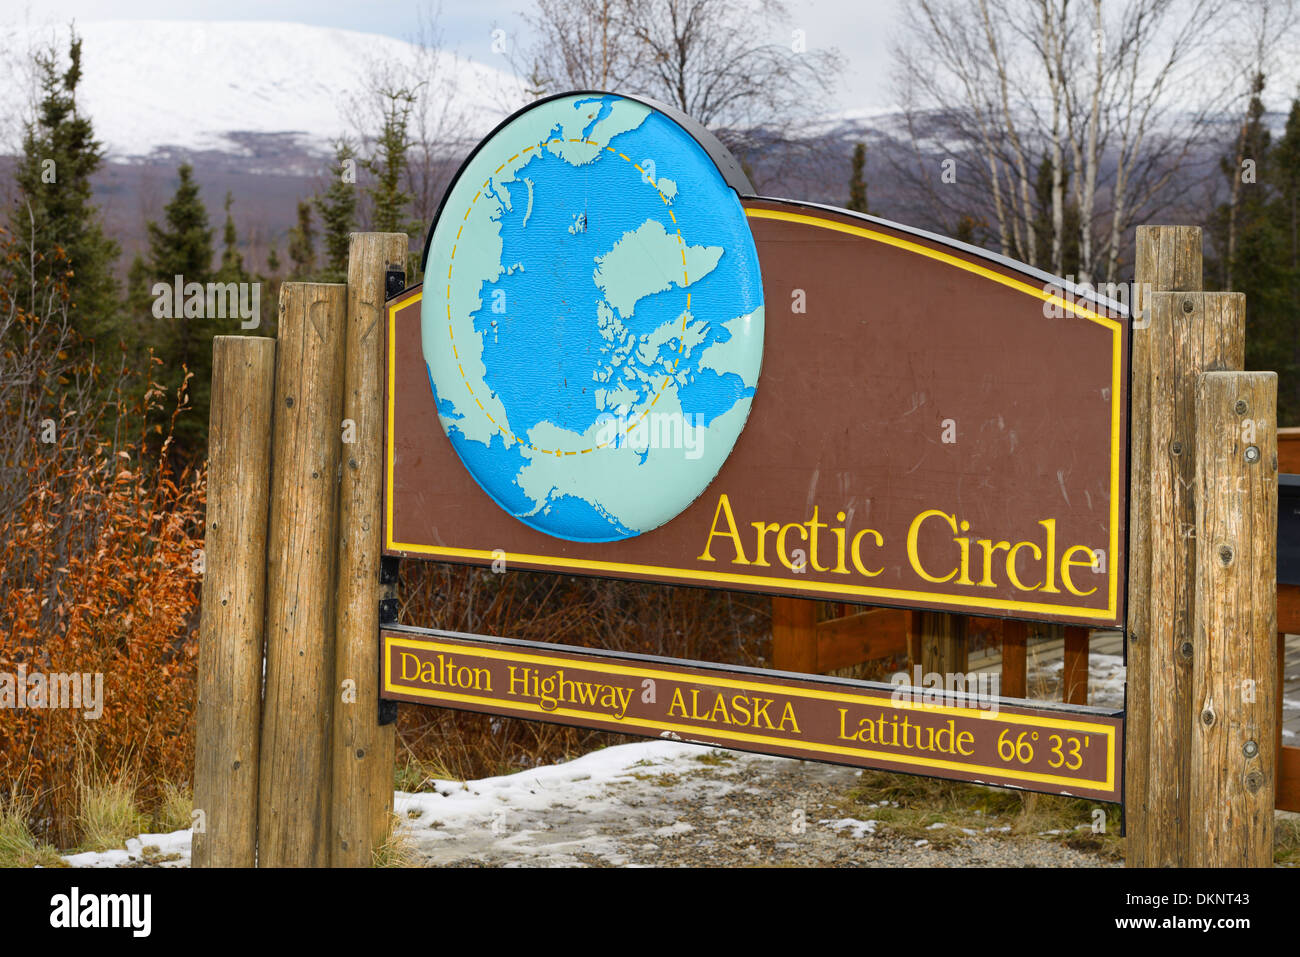 Letrero para el círculo polar ártico, a lo largo de la Dalton Highway en Alaska, EE.UU. Foto de stock